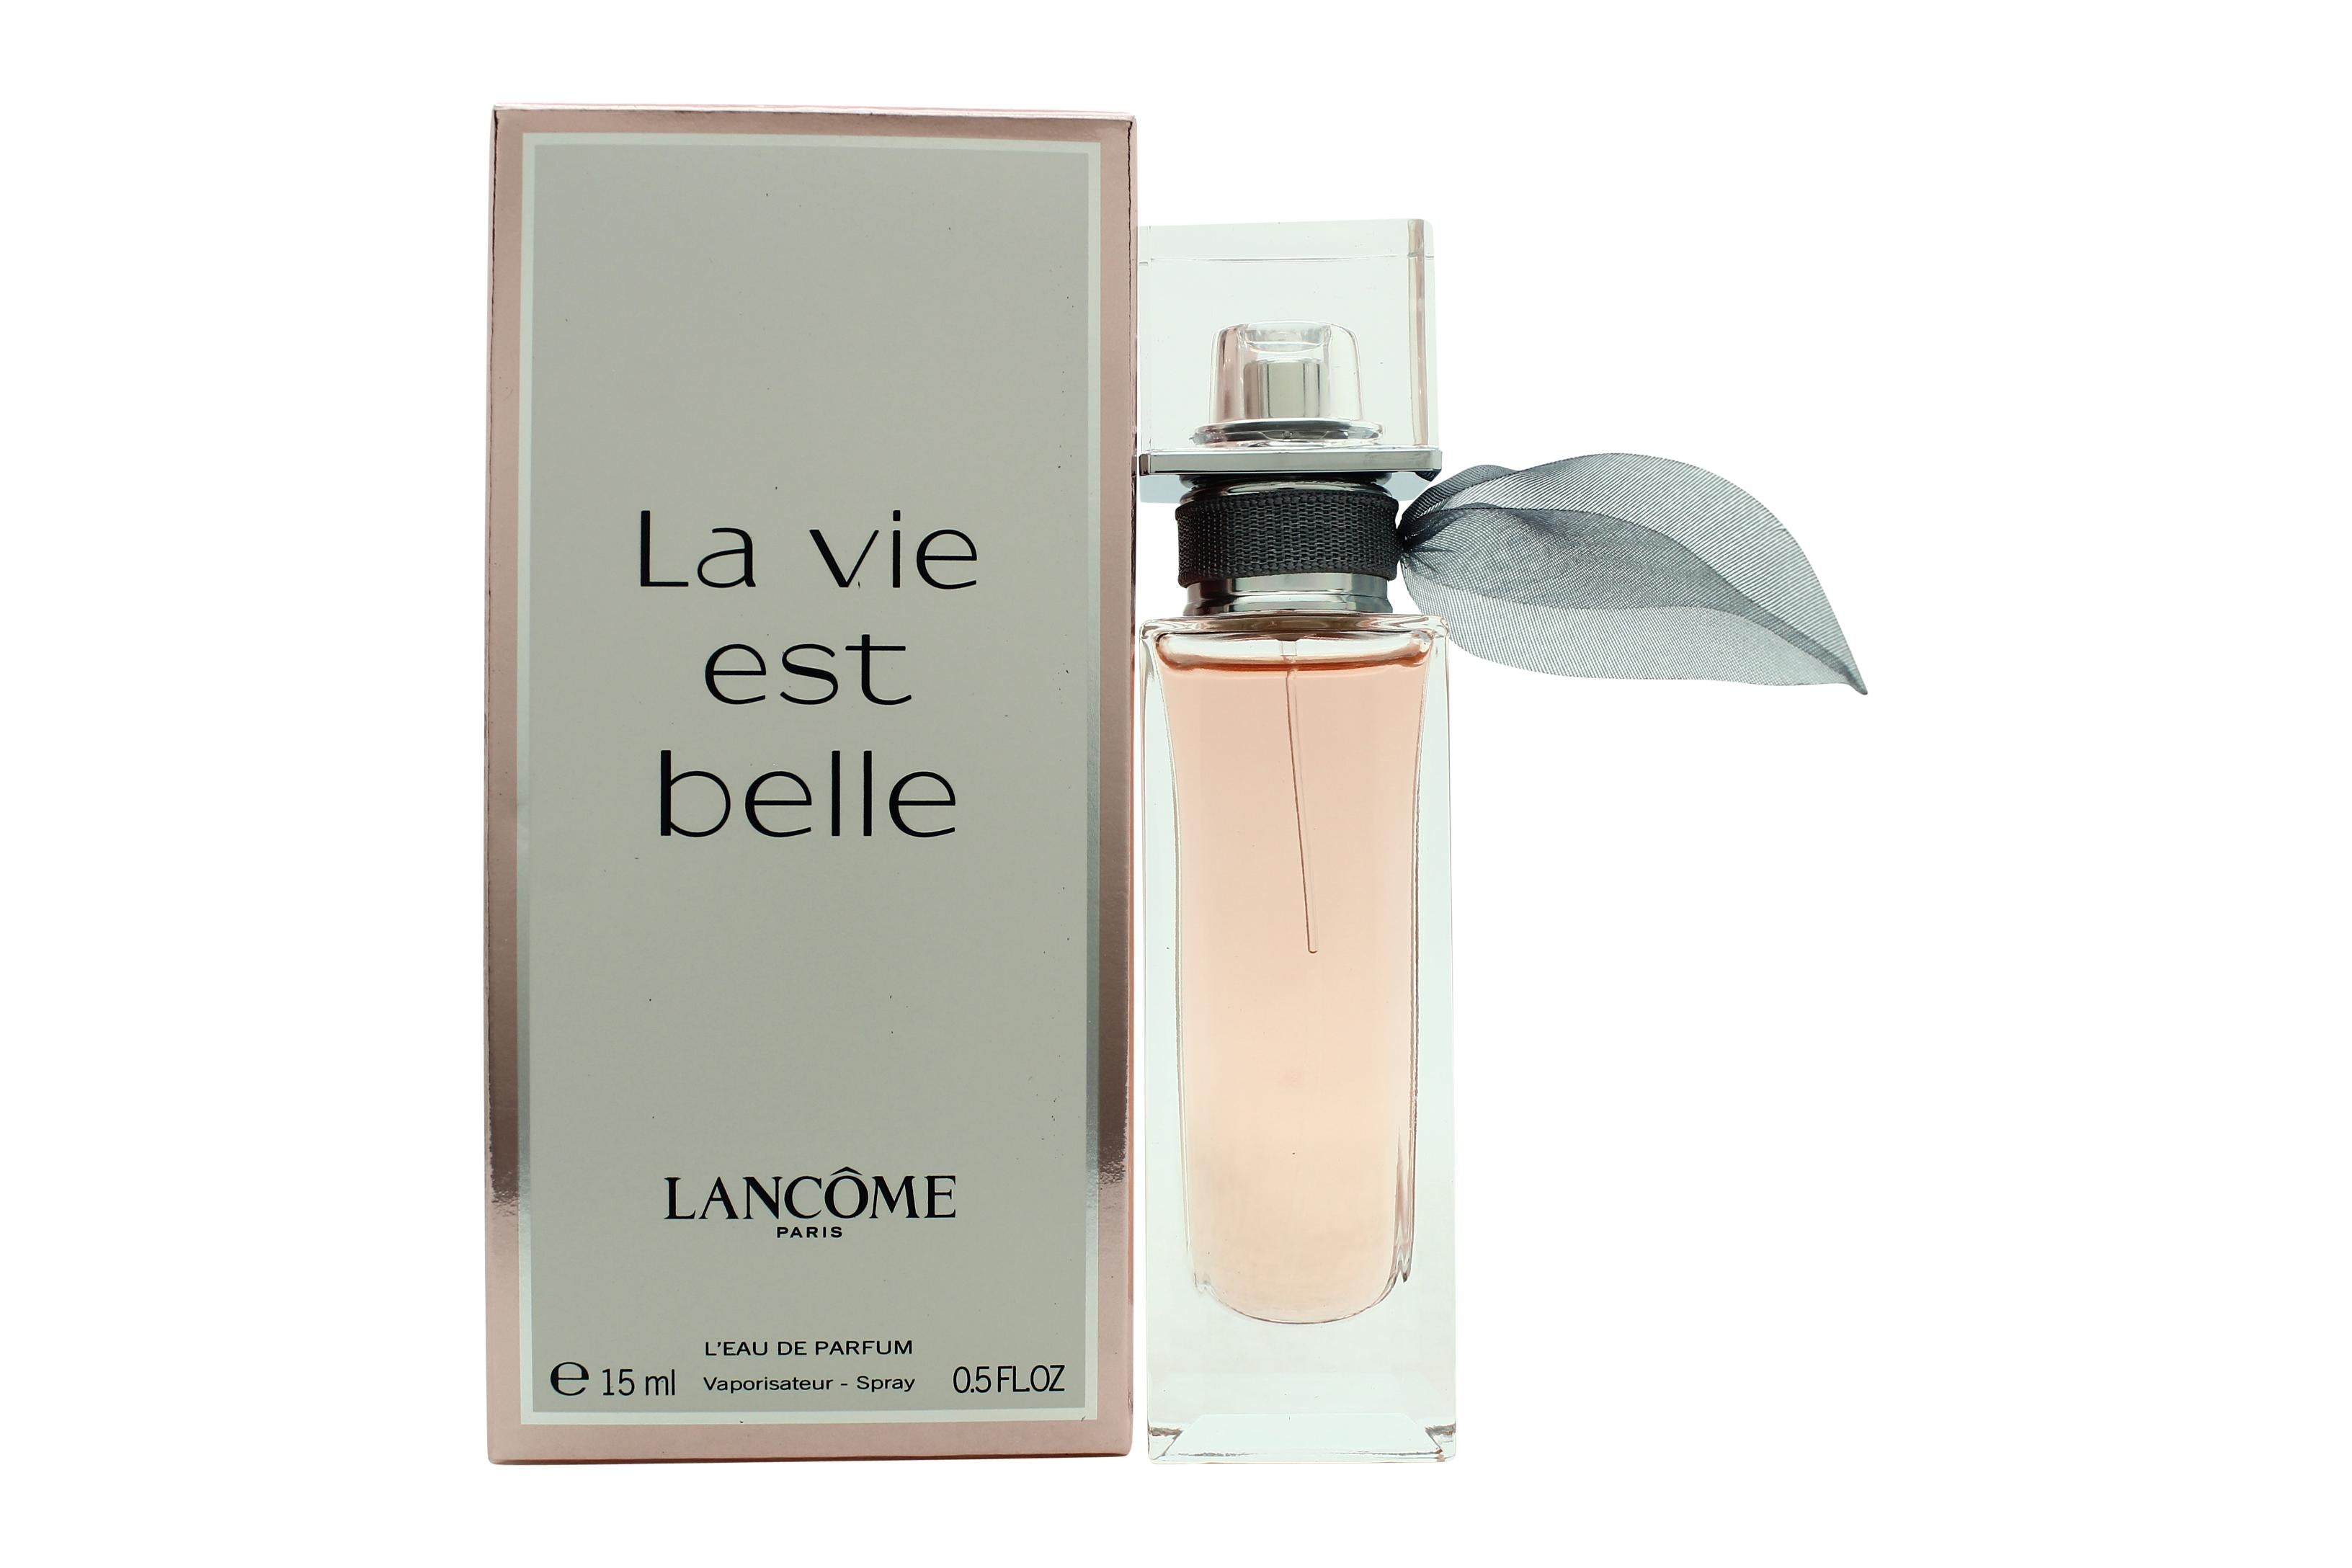 View Lancôme La Vie Est Belle Happiness Drops Eau de Parfum 15ml Spray information